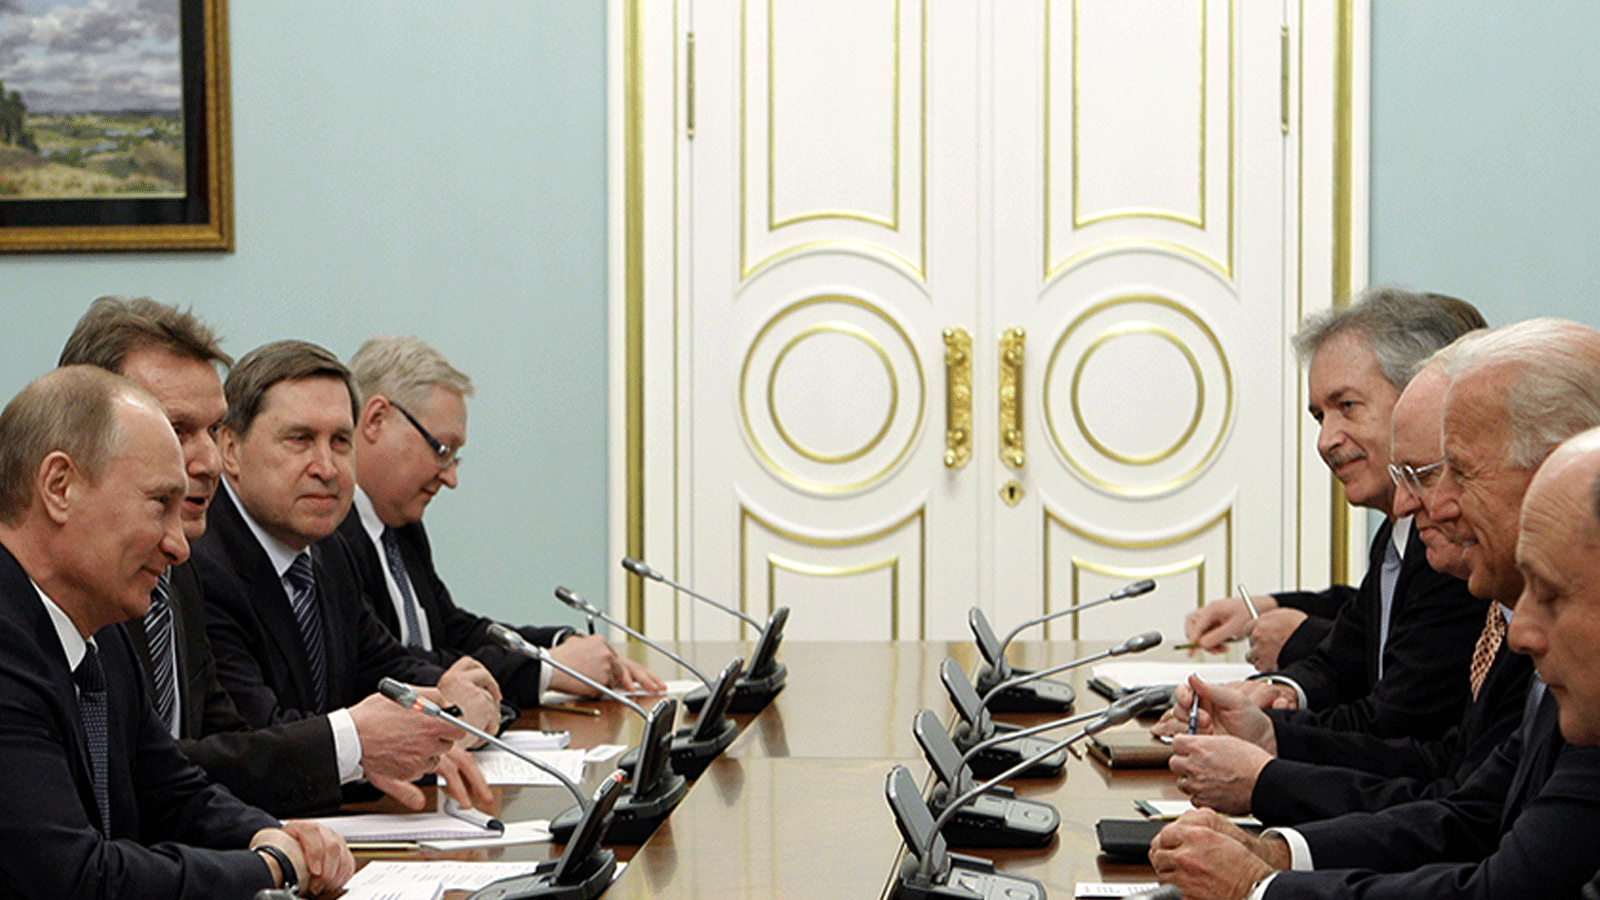 صورة تجمع نائب الرئيس الأميركي(آنذاك) جو بايدن والرئيس الروسي فلاديمير بوتين في العاصمة موسكو أثناء توقيع معاهدة نيوستارت في 10 مارس\آذار 2011